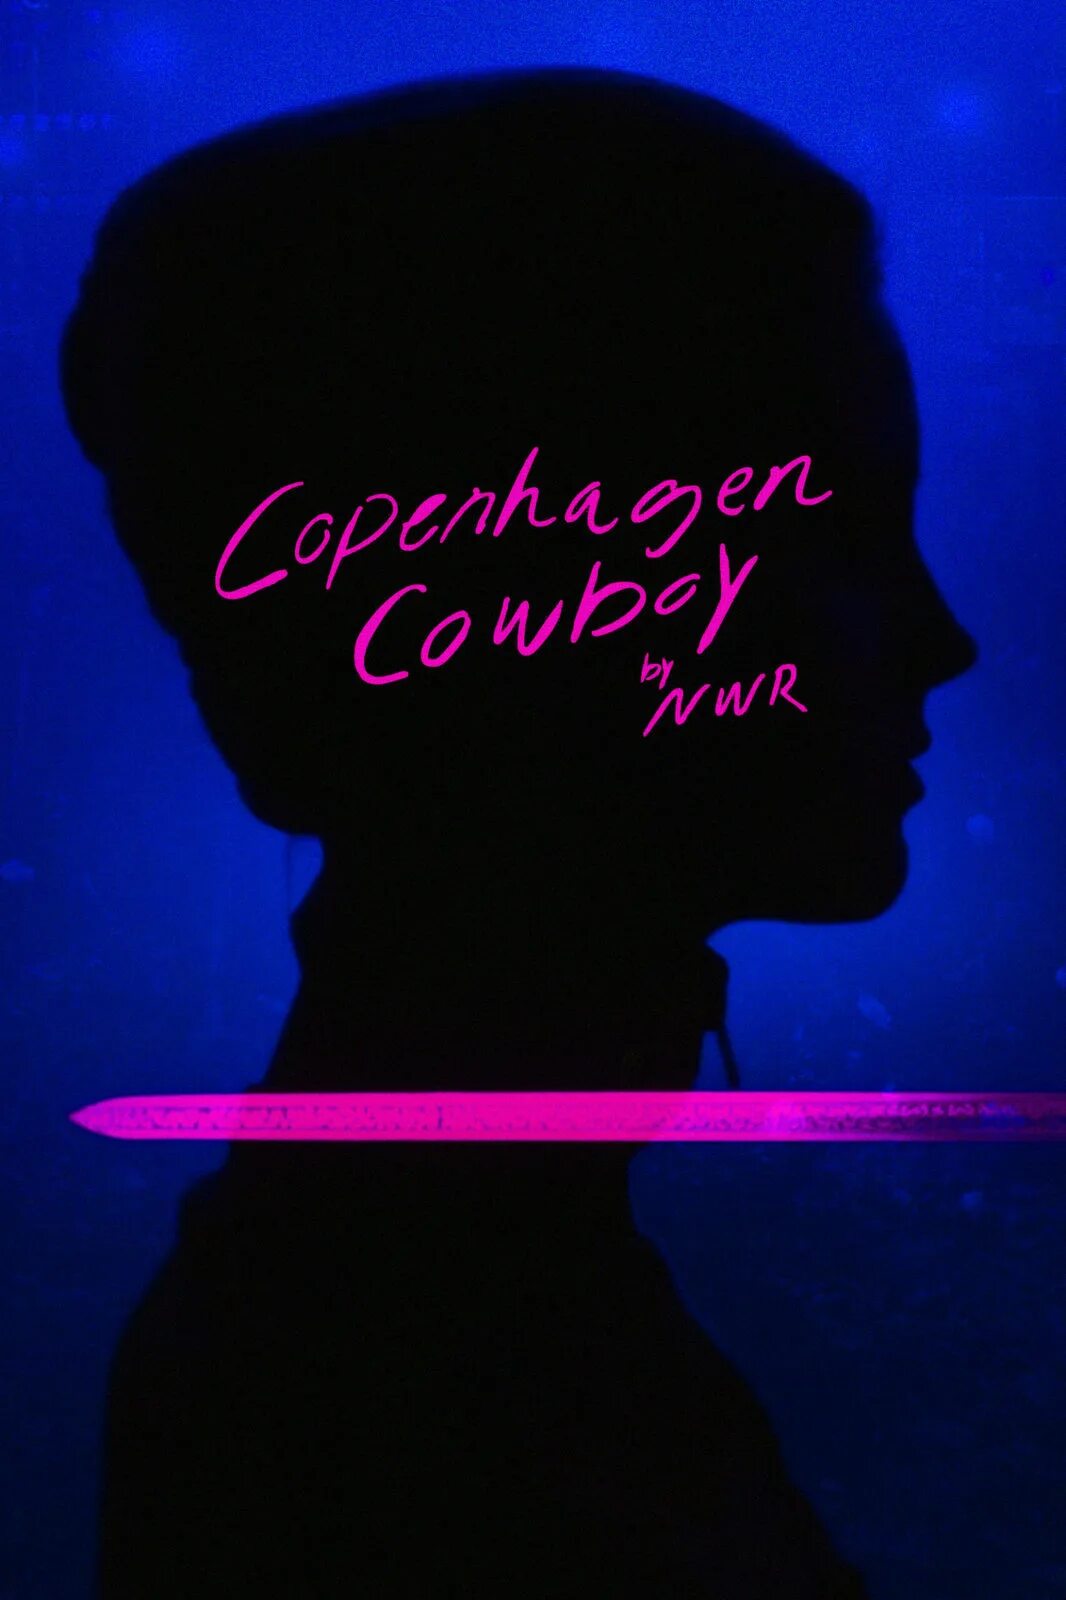 Ковбой из копенгагена 2022. Ковбой из Копенгагена / Copenhagen Cowboy (2022). Николас Виндинг Рефн Копенгагенский ковбой. Ковбой из Копенгагена Постер.